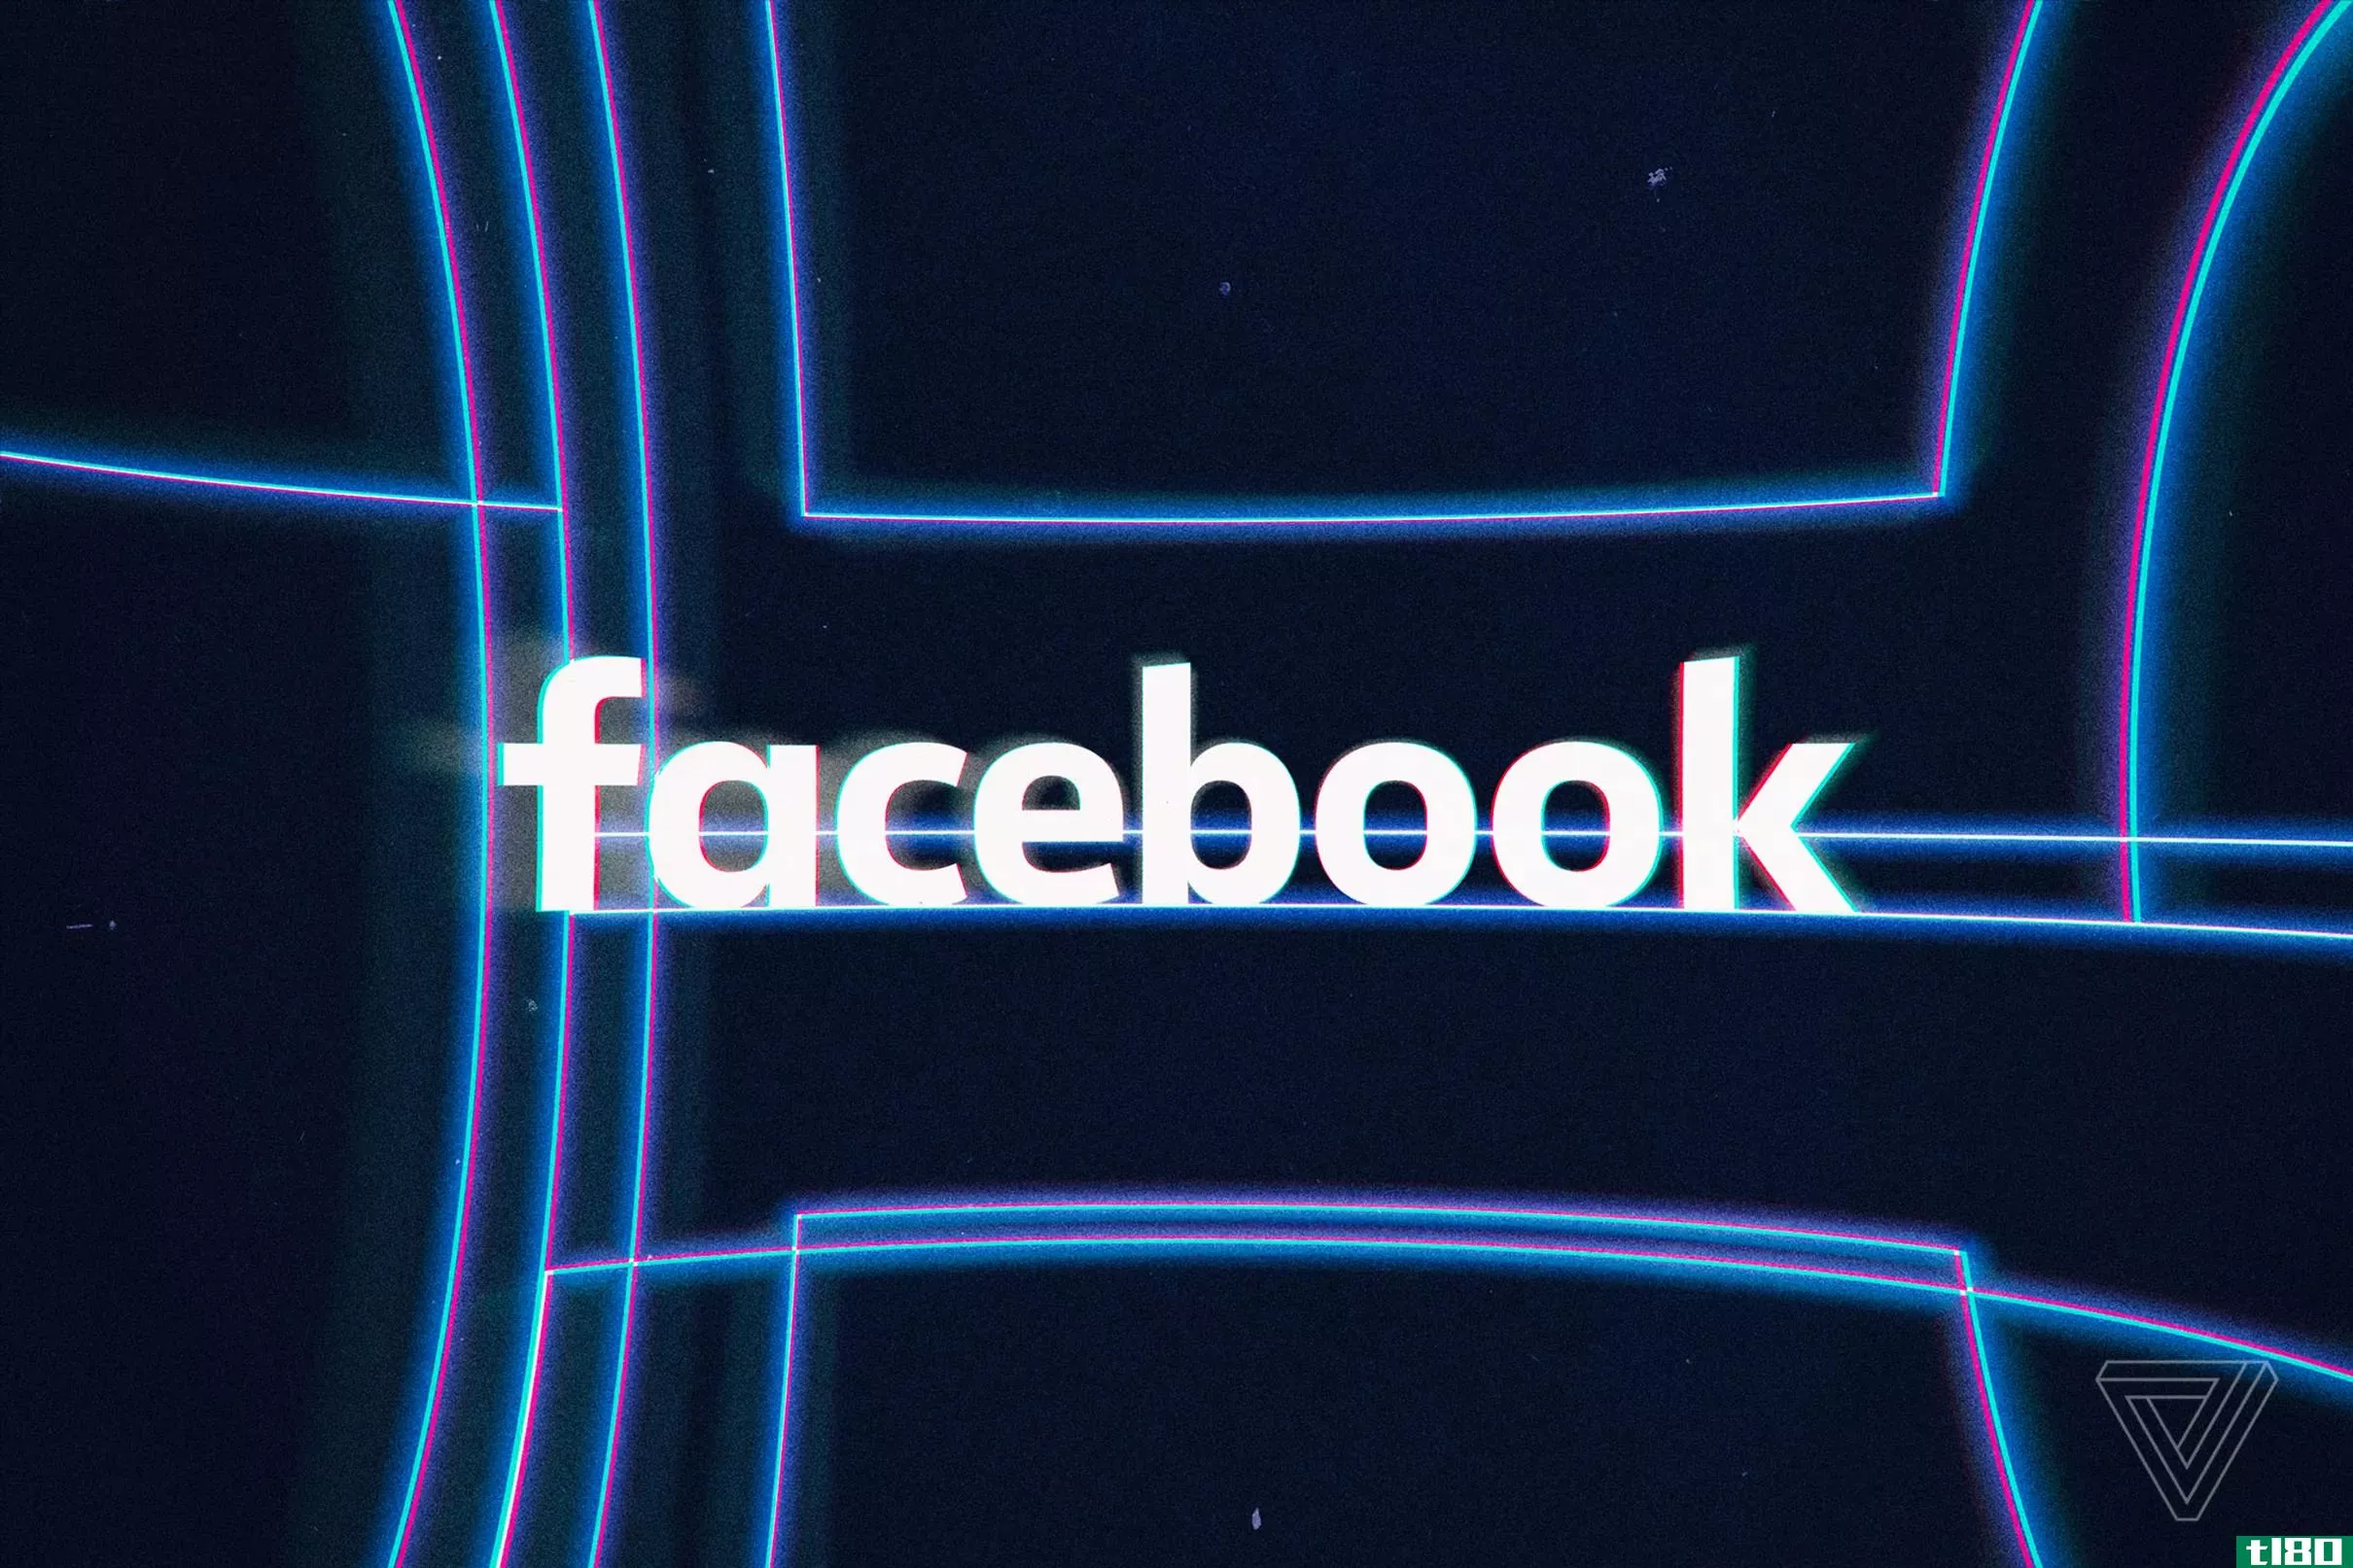 facebook禁止在仇恨言论更新中使用黑脸和反犹刻板印象